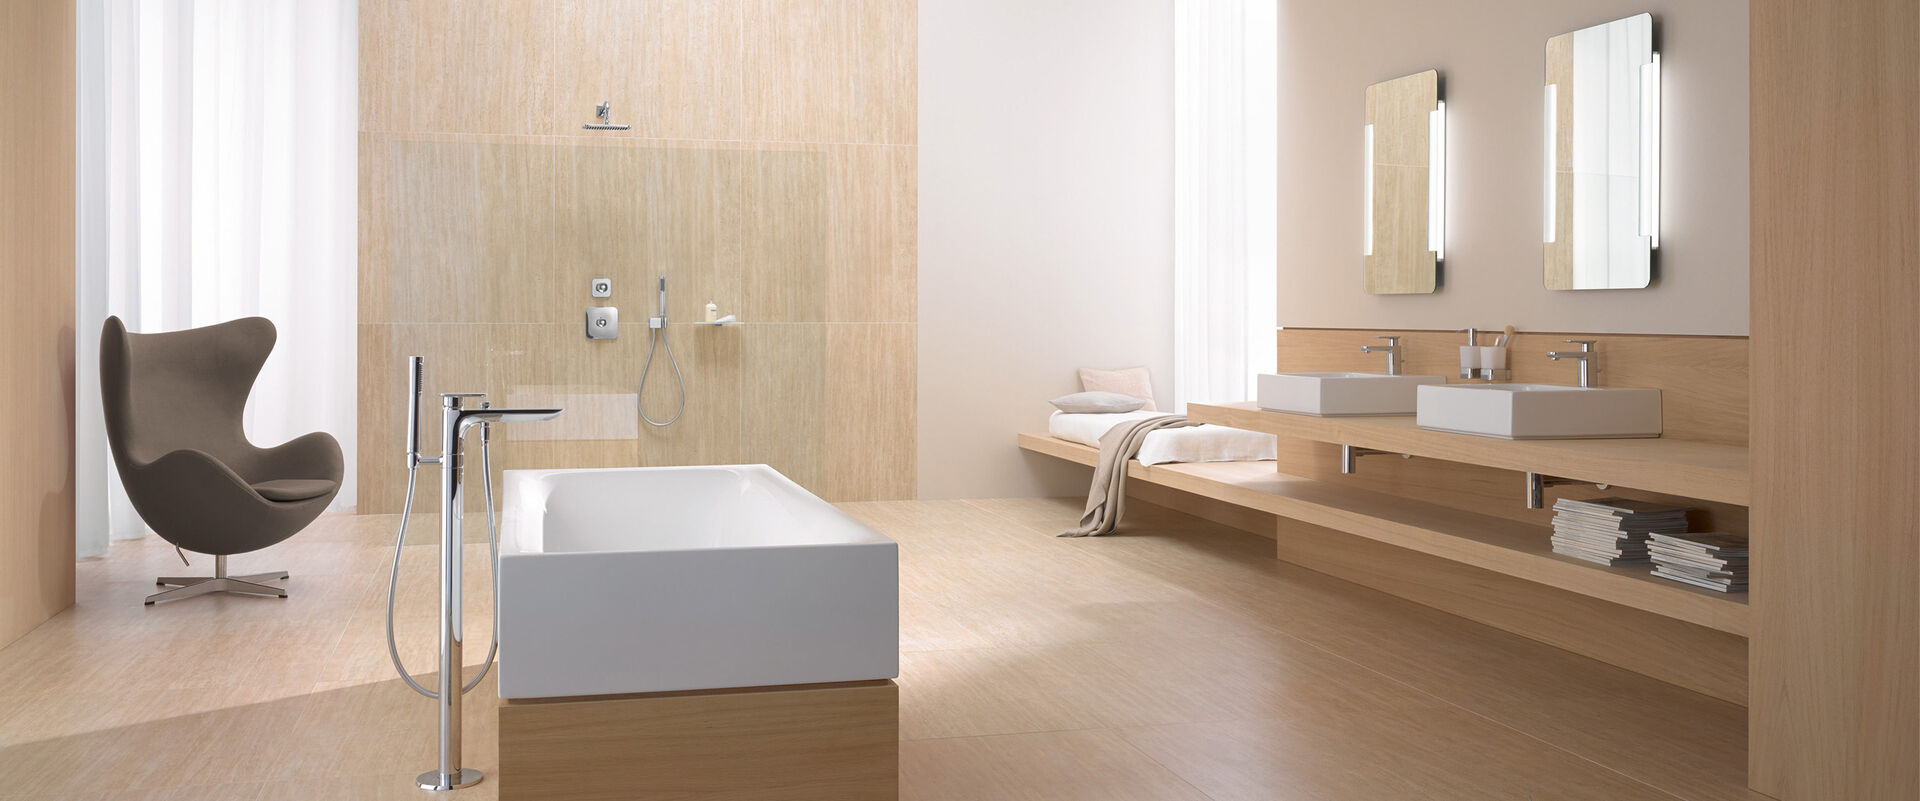 Standarmatur für Badewanne, Duscharmatur, Waschbeckenarmaturen in Badmilieu hell mit Holz und freistehender Badewanne.